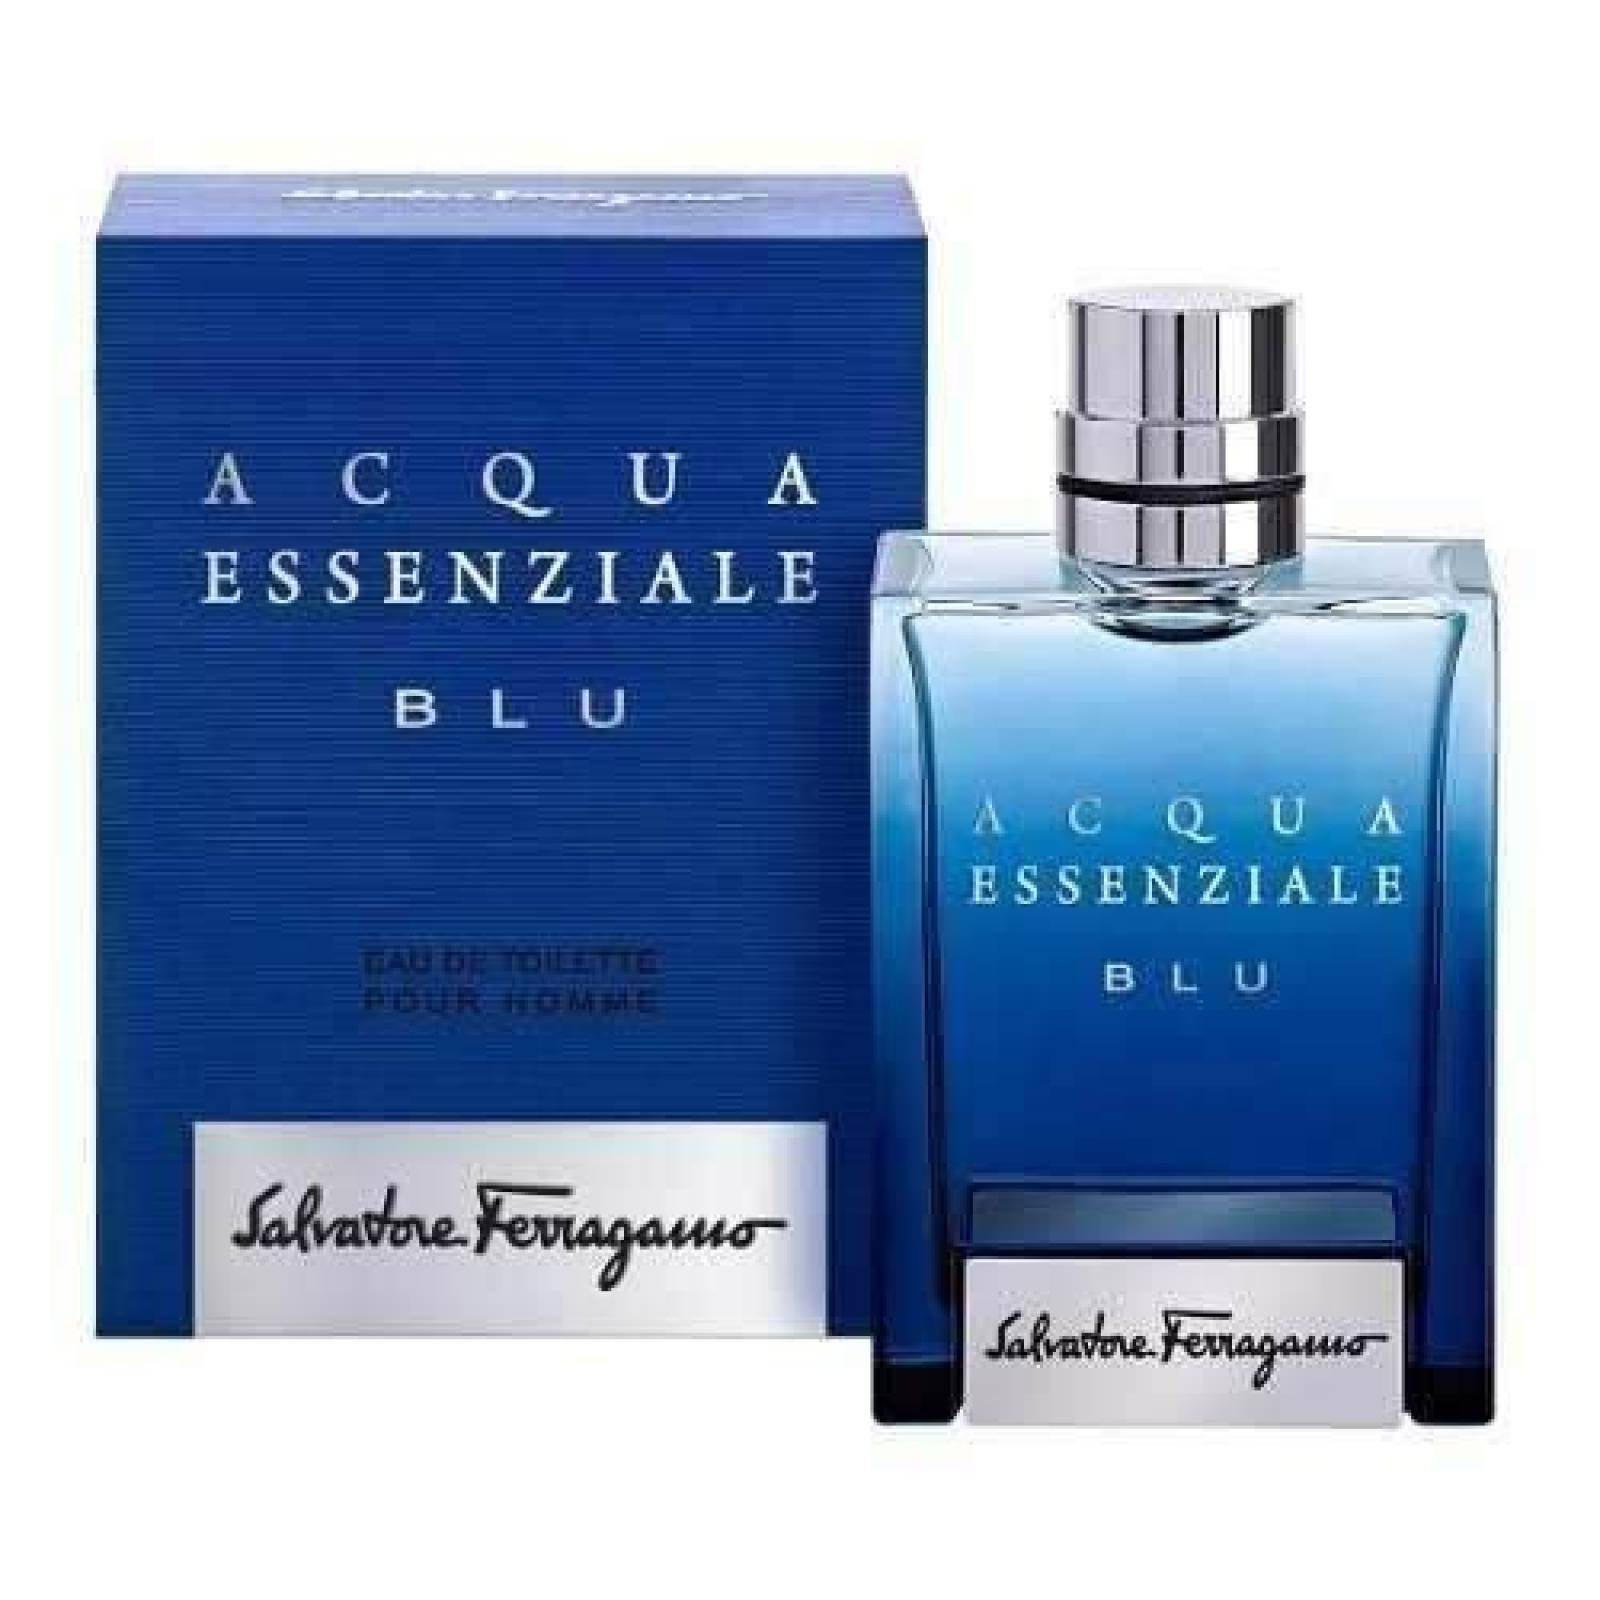 Acqua Essenziale Blu Salvatore Ferragamo 100 Ml Original